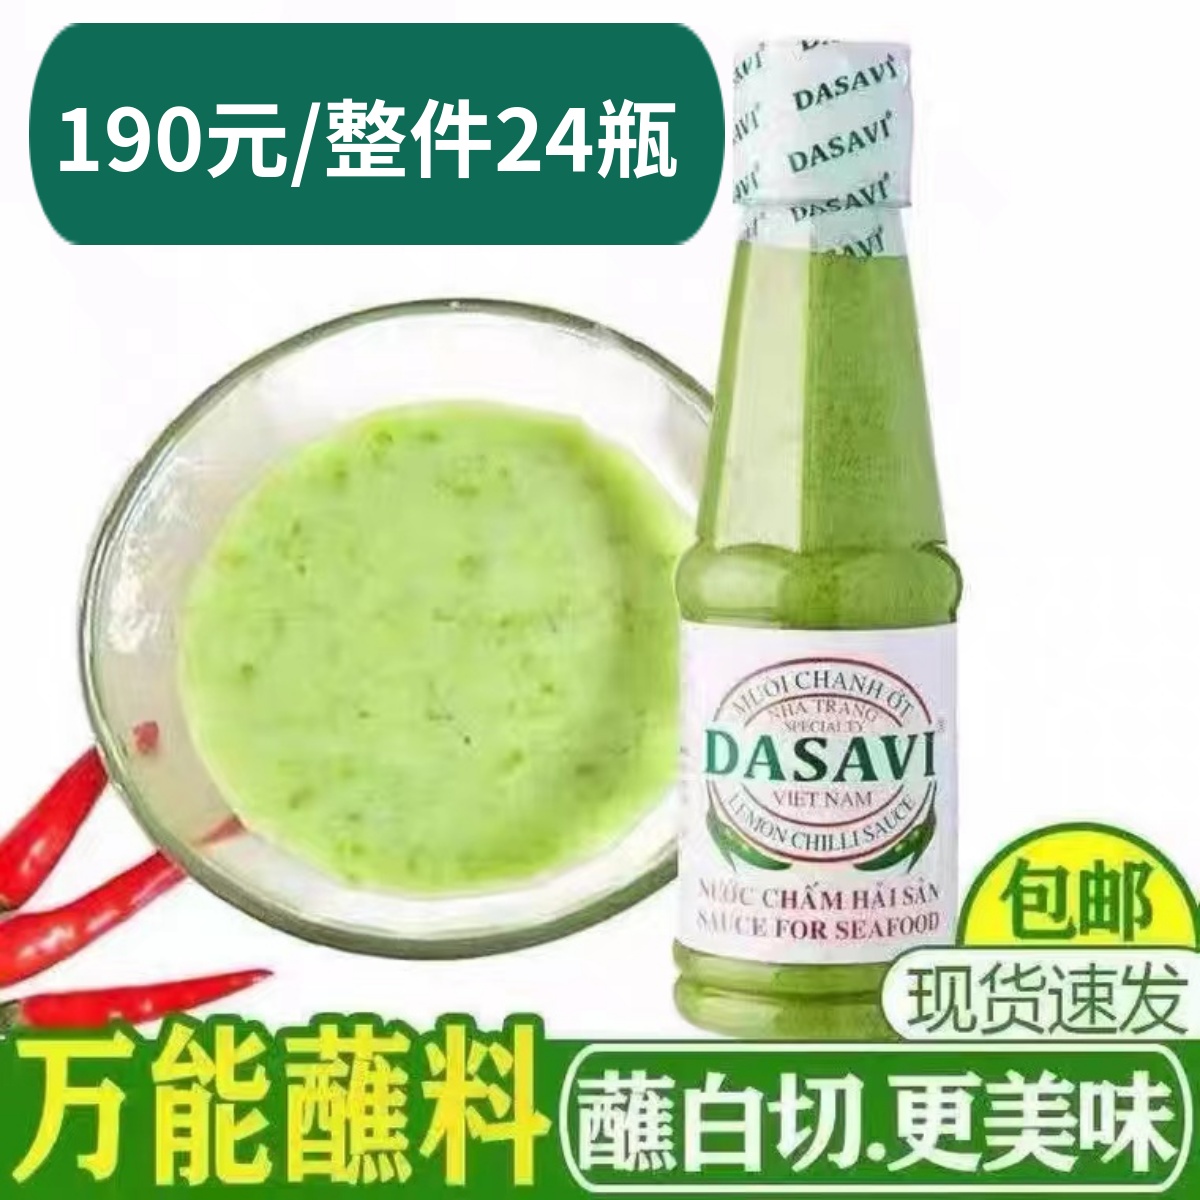 越南DASAVI柠檬青椒盐酱绿色泰式辣椒调料进口包装风味260g海鲜酱